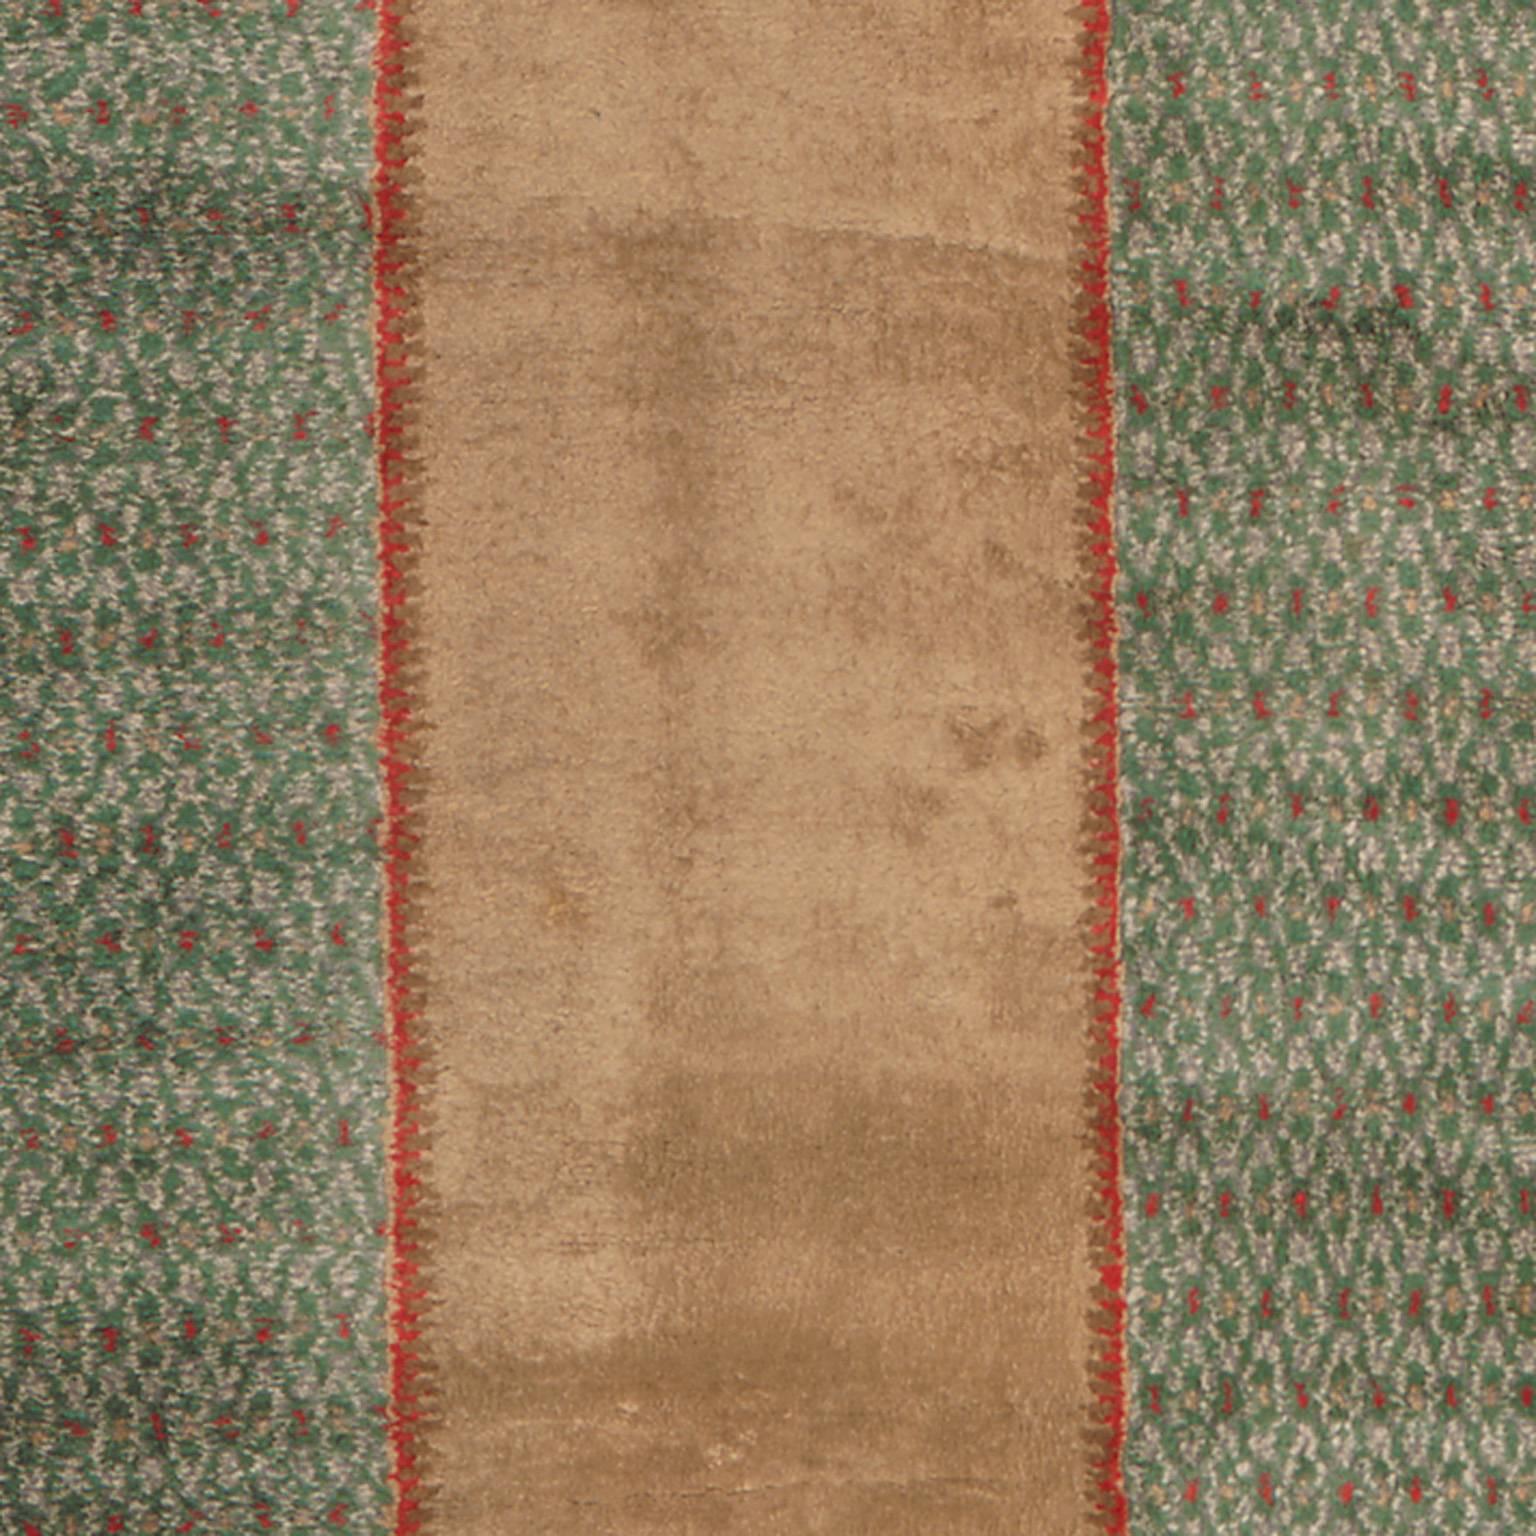 Antique Art Deco Savonnerie carpet
France ca. 1925